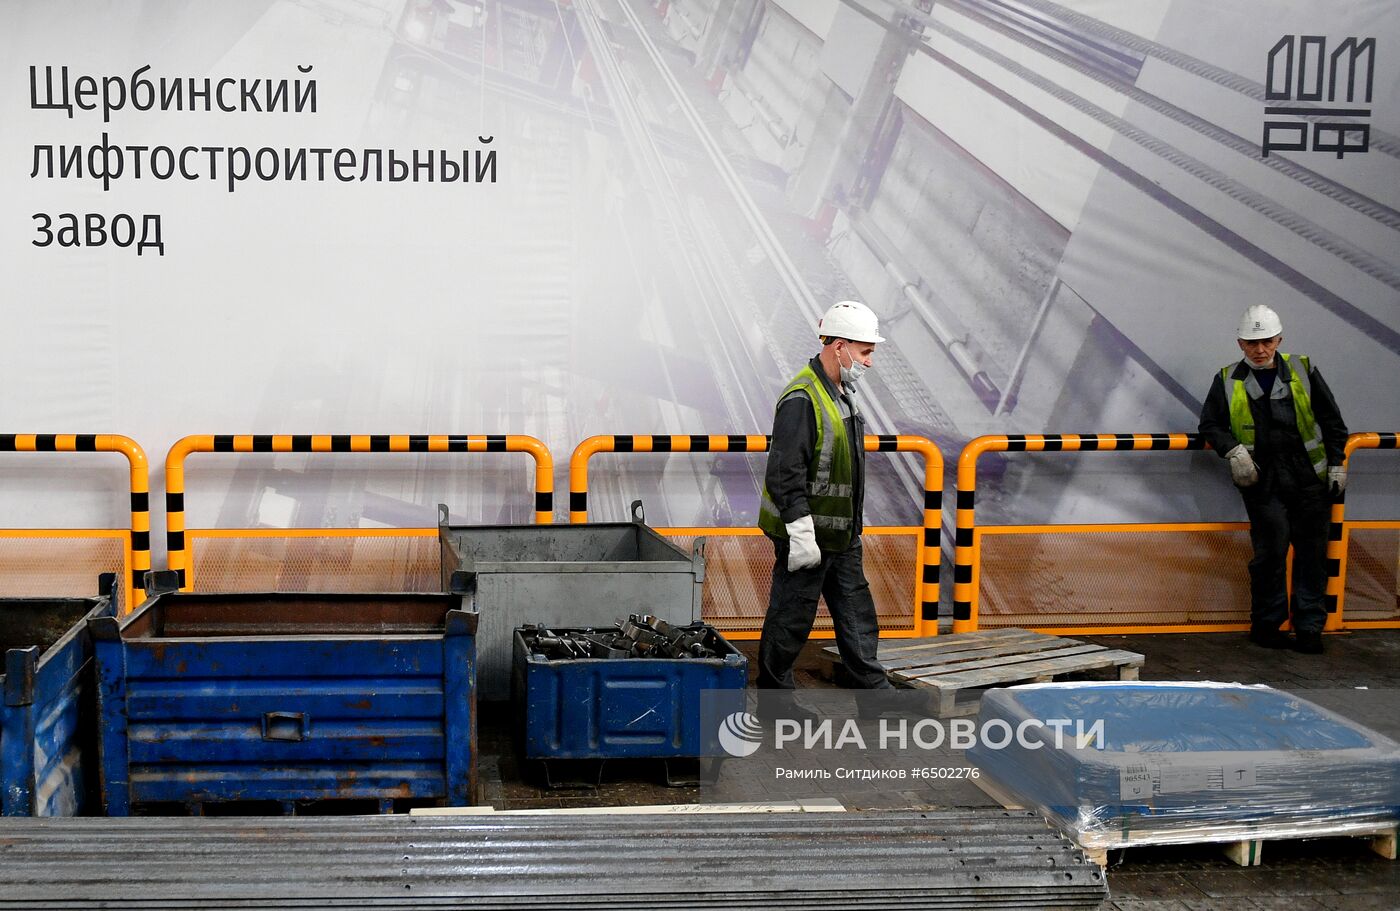 Щербинский лифтостроительный завод